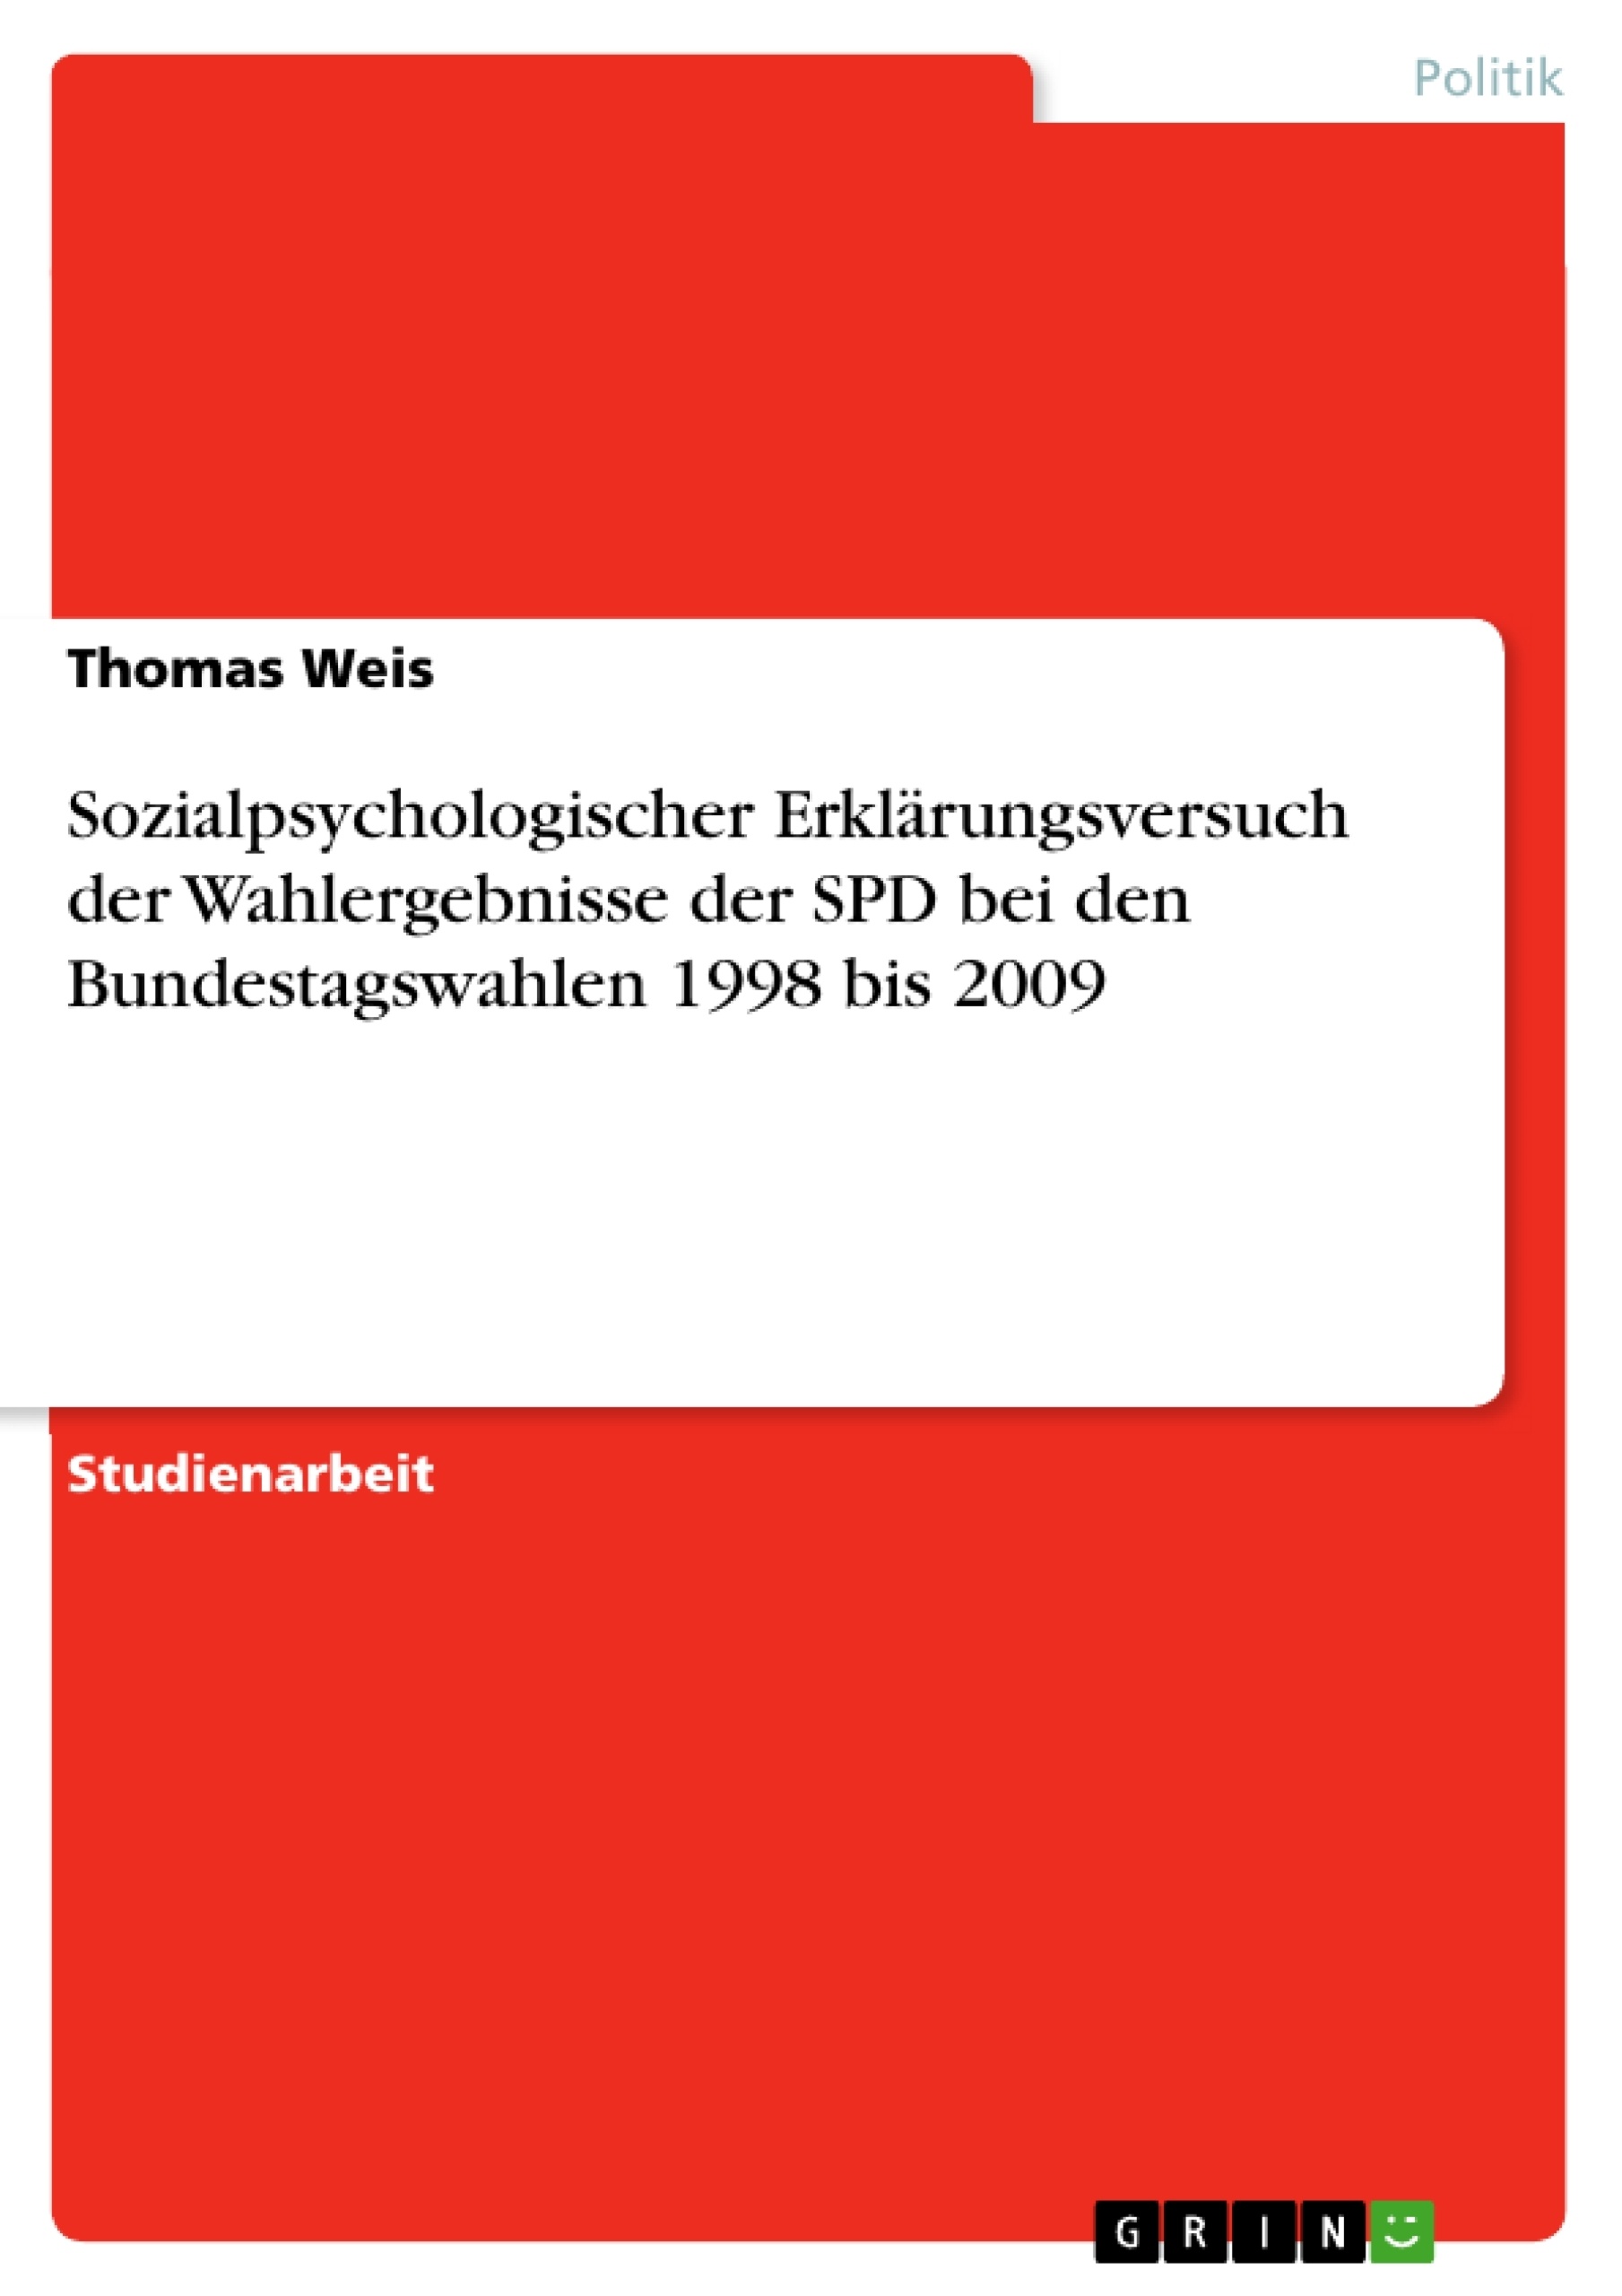 Título: Sozialpsychologischer Erklärungsversuch der Wahlergebnisse der SPD bei den Bundestagswahlen 1998 bis 2009